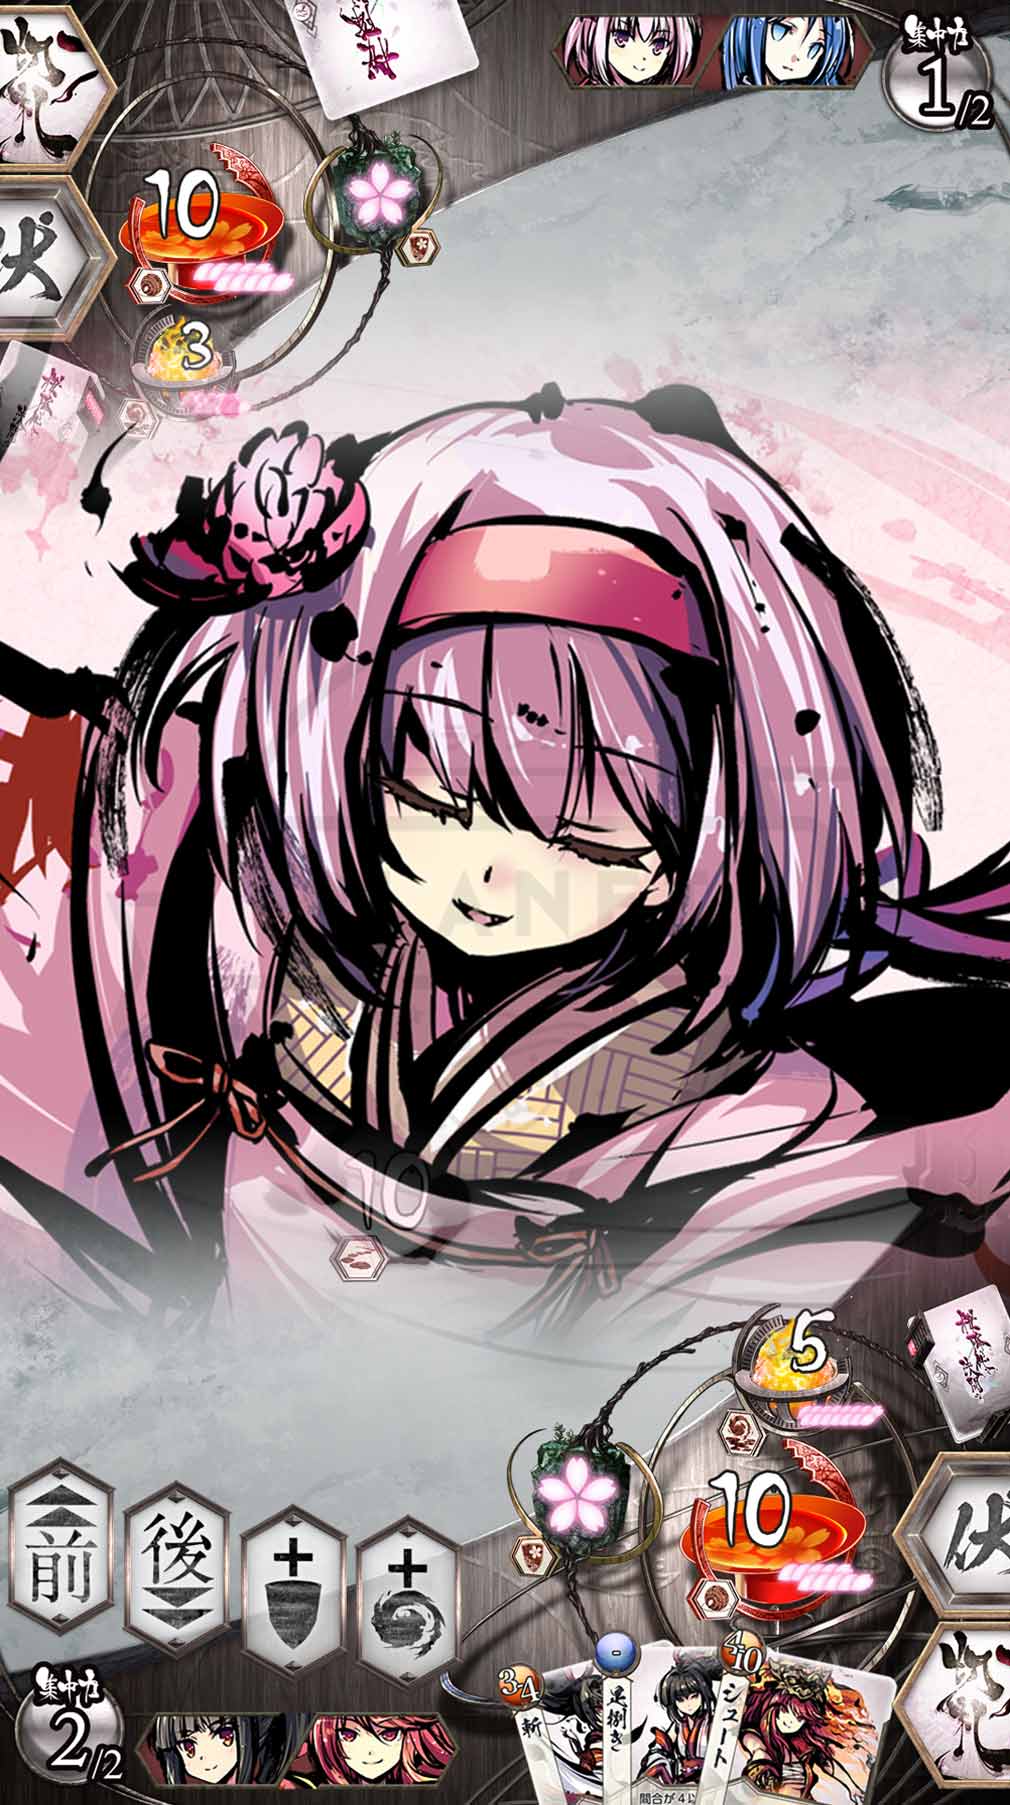 桜降る代に決闘を 電子版(ふるよに)　スマホアプリ版メガミ『トヨコ』カットインスクリーンショット